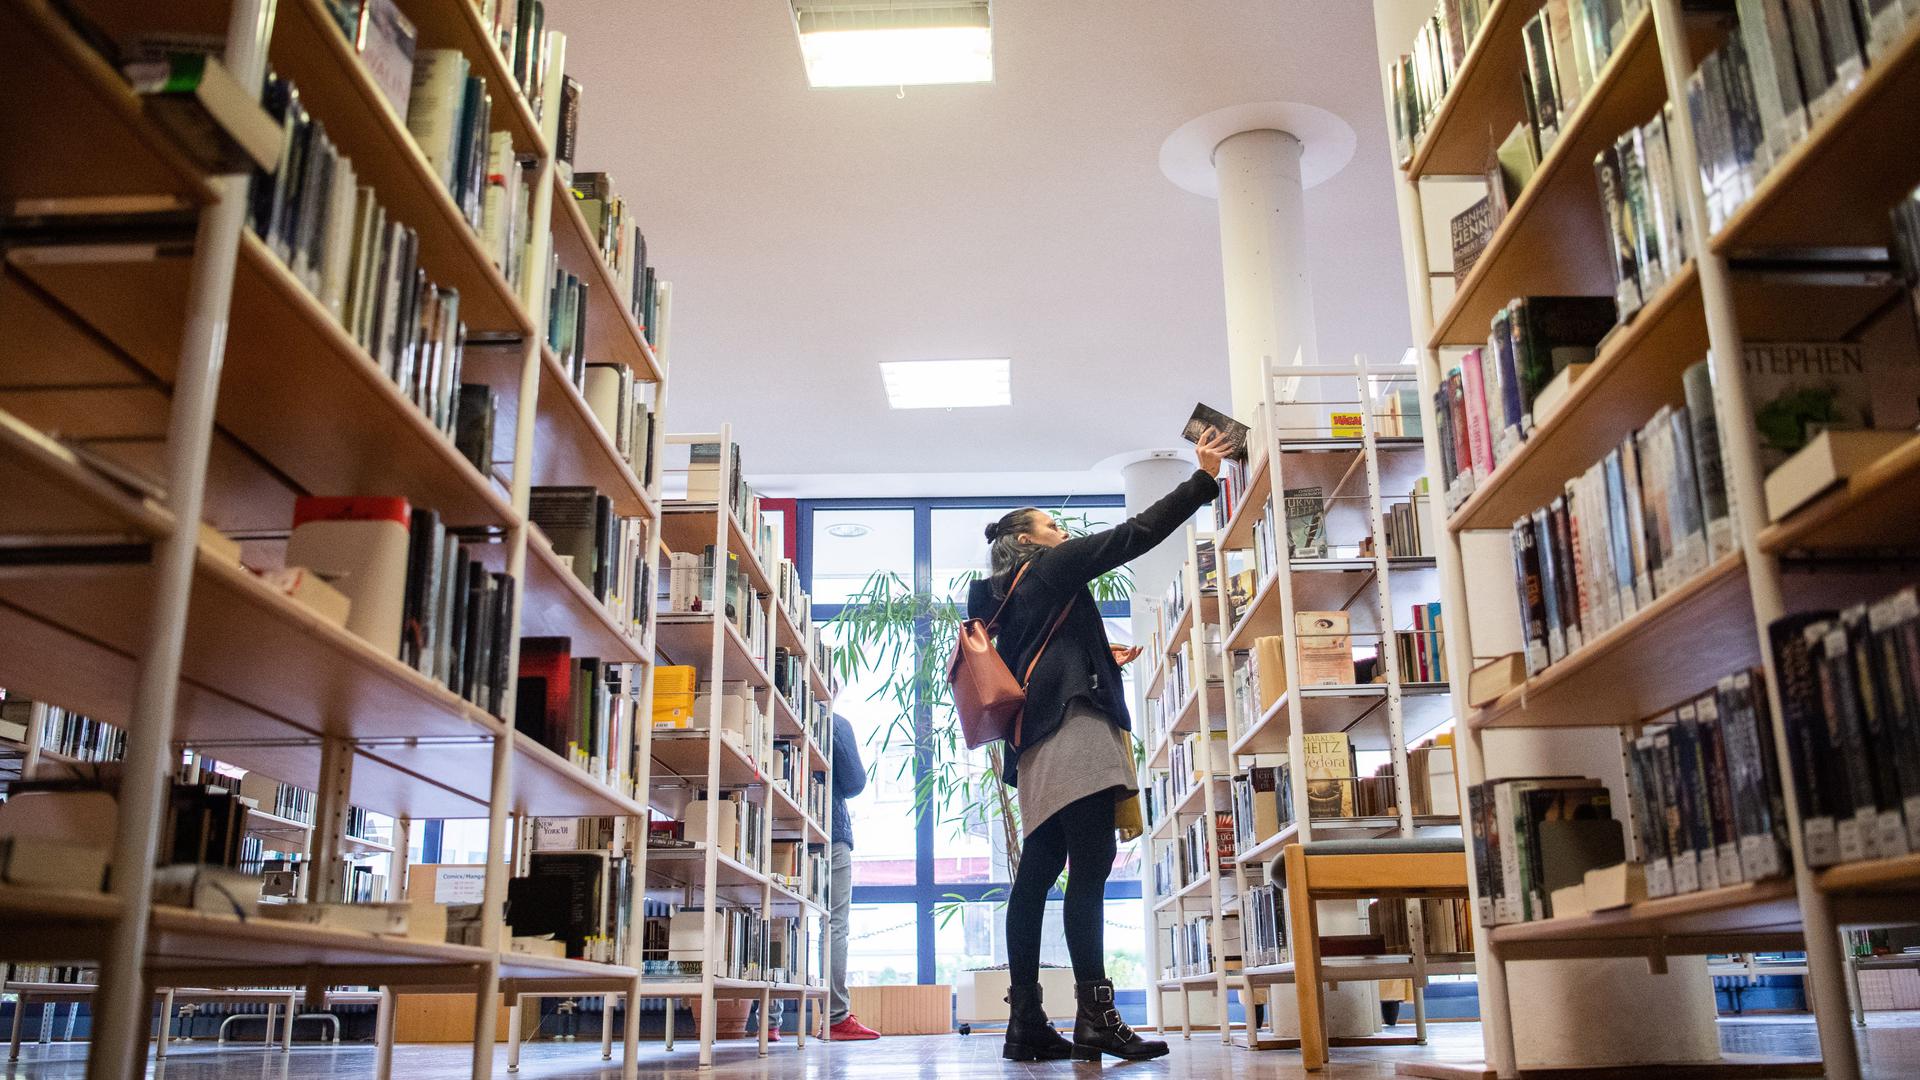 Eine Besucherin der Stadtbücherei nimmt ein Buch aus dem Regal. Die Stadtbücherei in Geislingen an der Steige wird mit der Auszeichnung «Bibliothek des Jahres Baden Württemberg» geehrt. (zu dpa "Totgesagte leben länger - Bibliotheken im Zeitalter des Internets") +++ dpa-Bildfunk +++